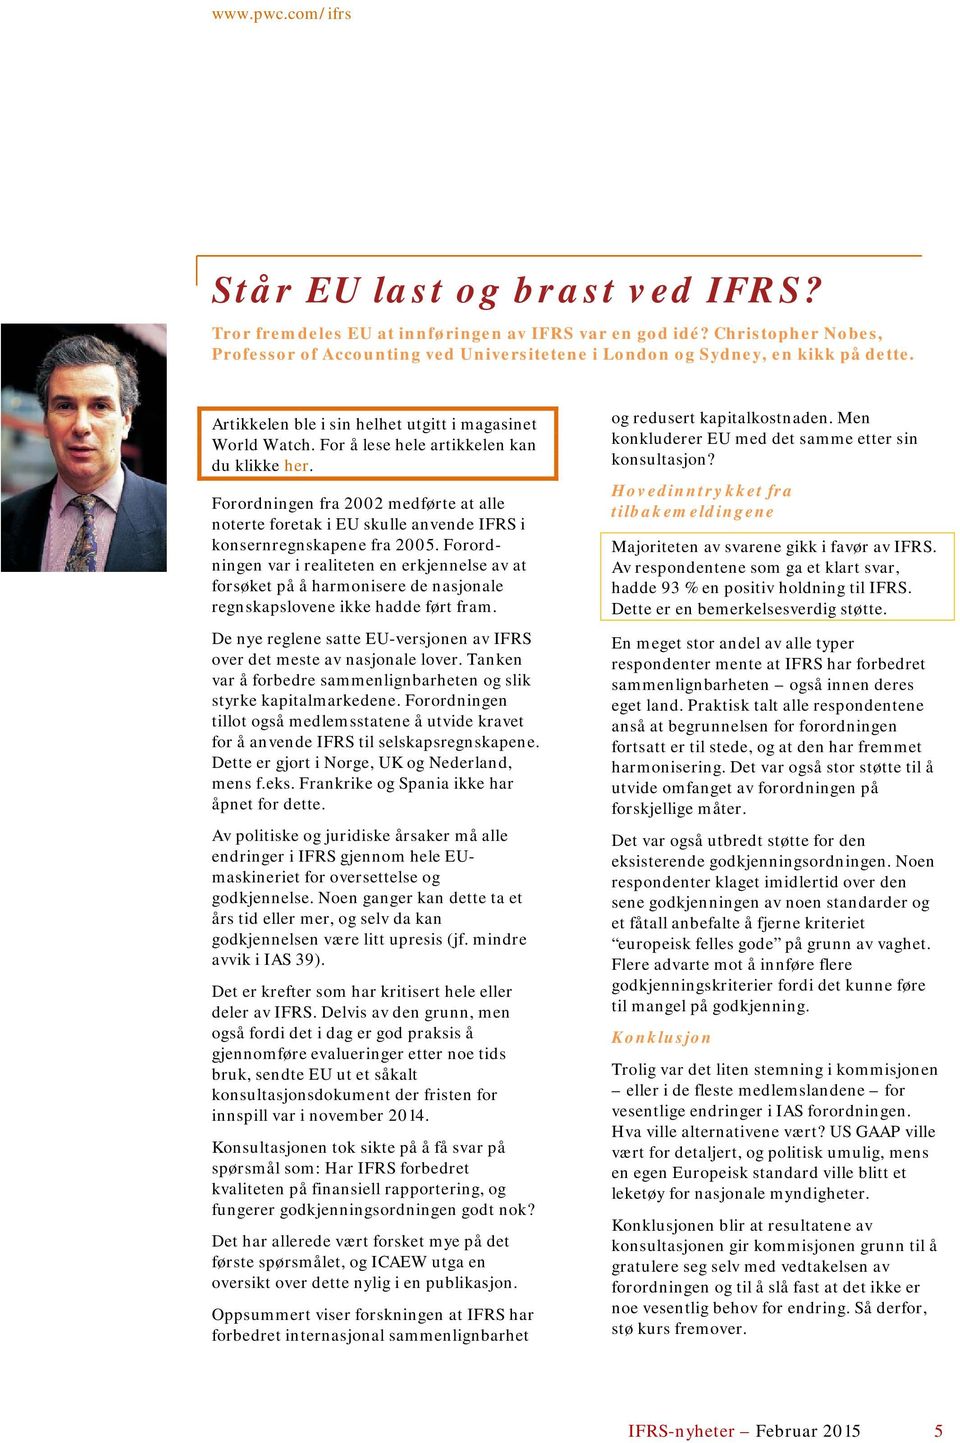 Forordningen fra 2002 medførte at alle noterte foretak i EU skulle anvende IFRS i konsernregnskapene fra 2005.